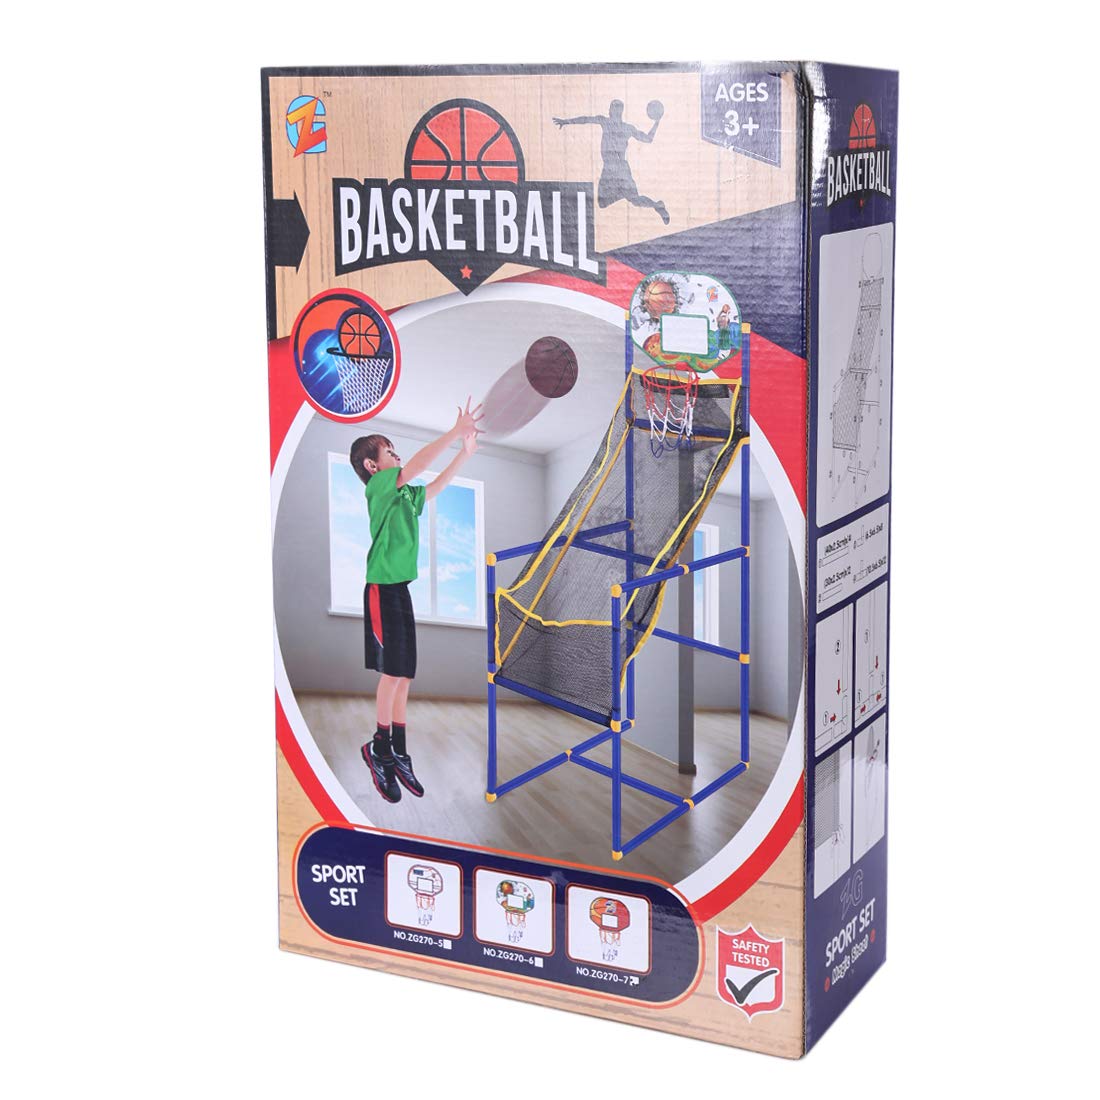 Basketball-Shoot-image-1